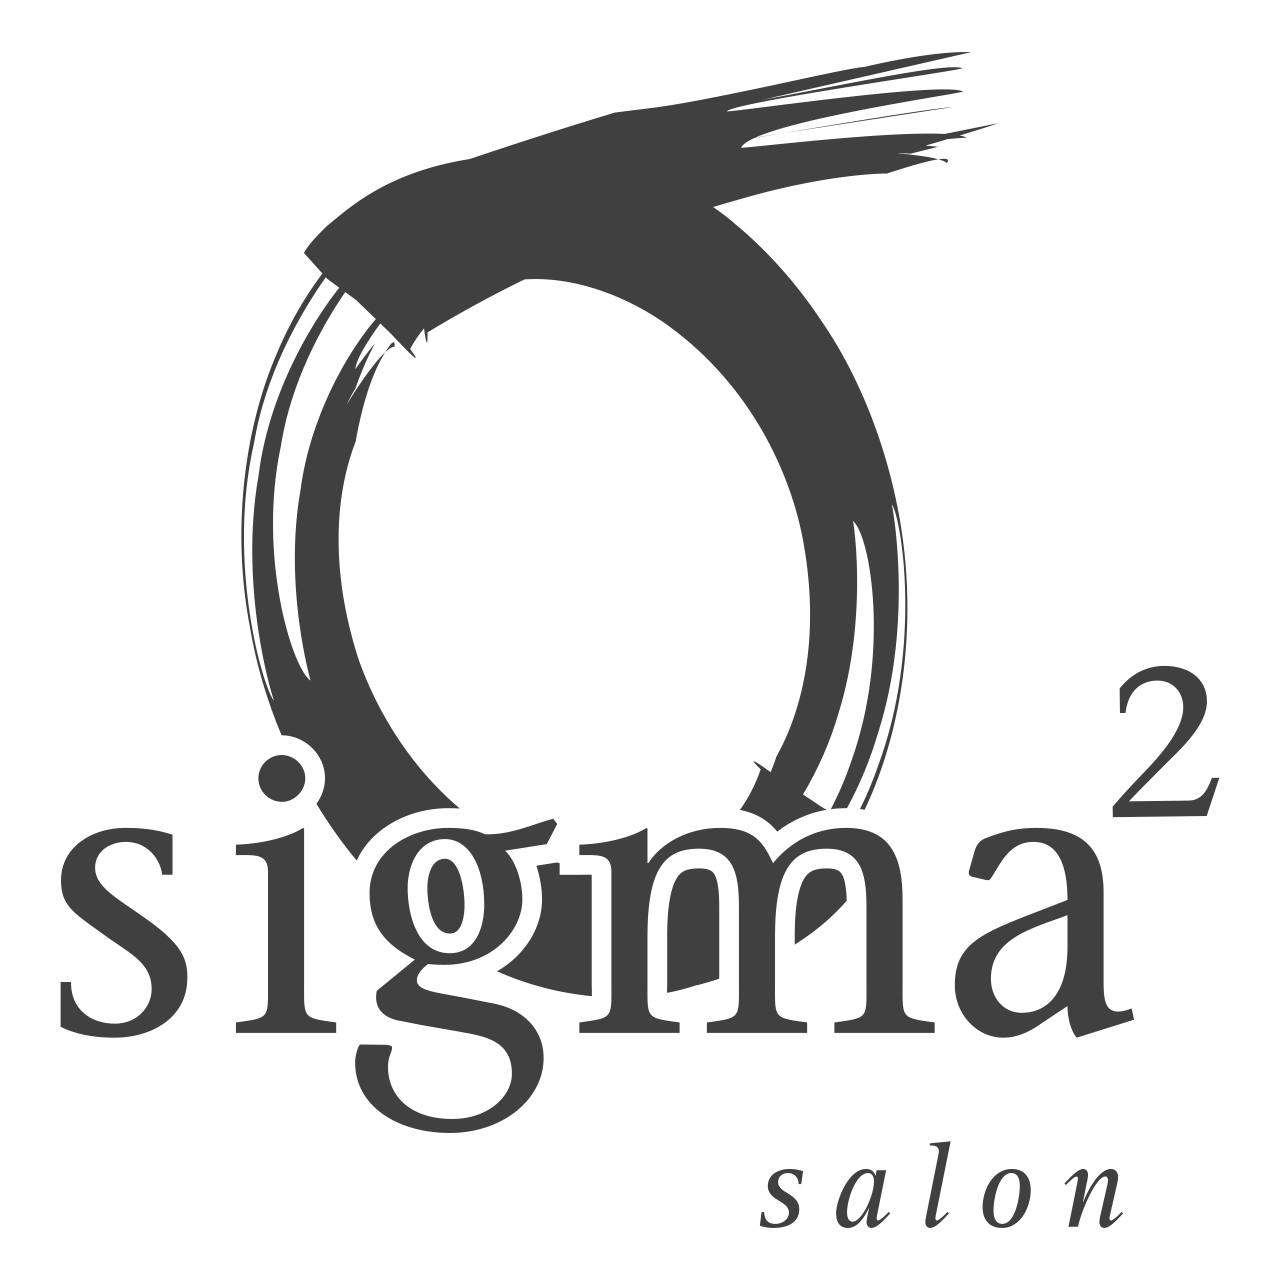 Sigma Squared Salon